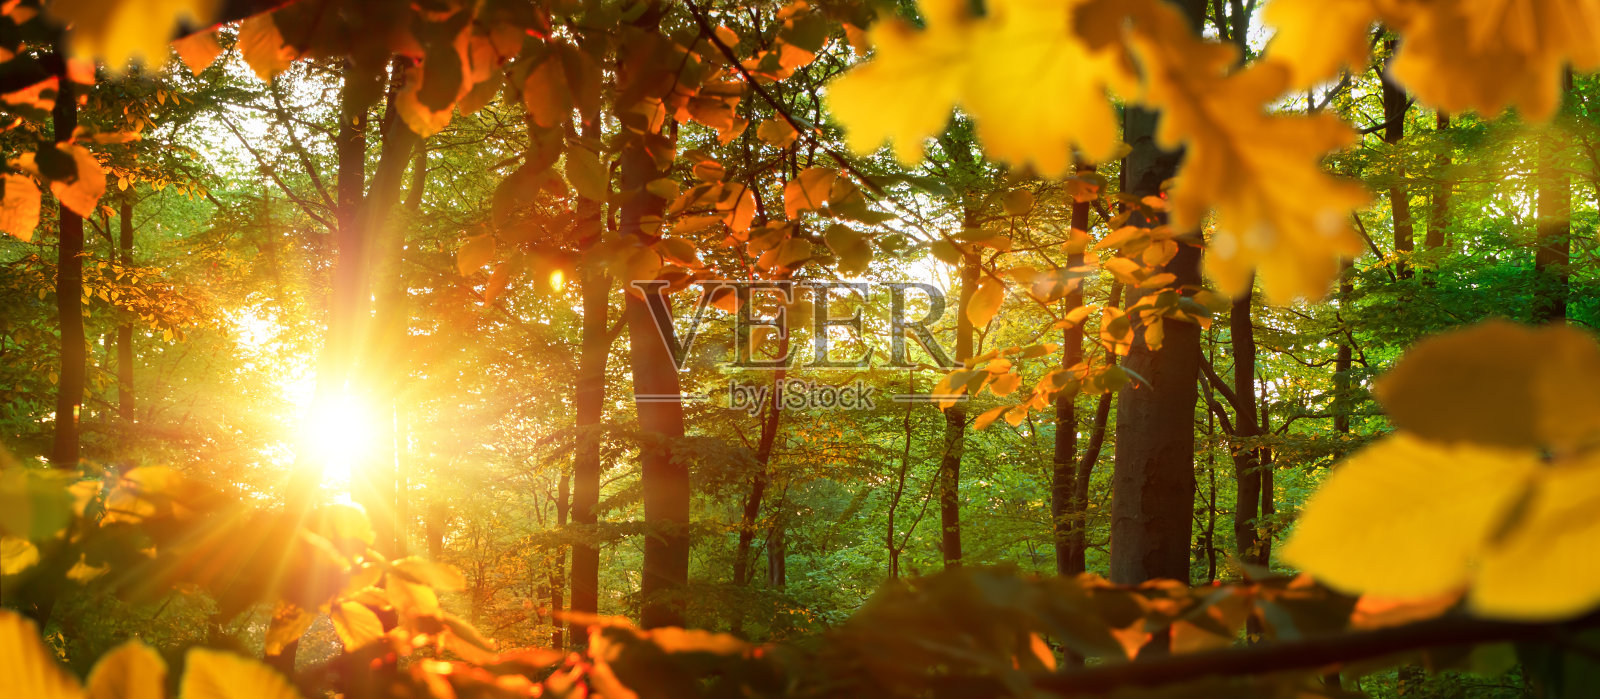 明亮的秋日照亮了森林里的橡树叶照片摄影图片